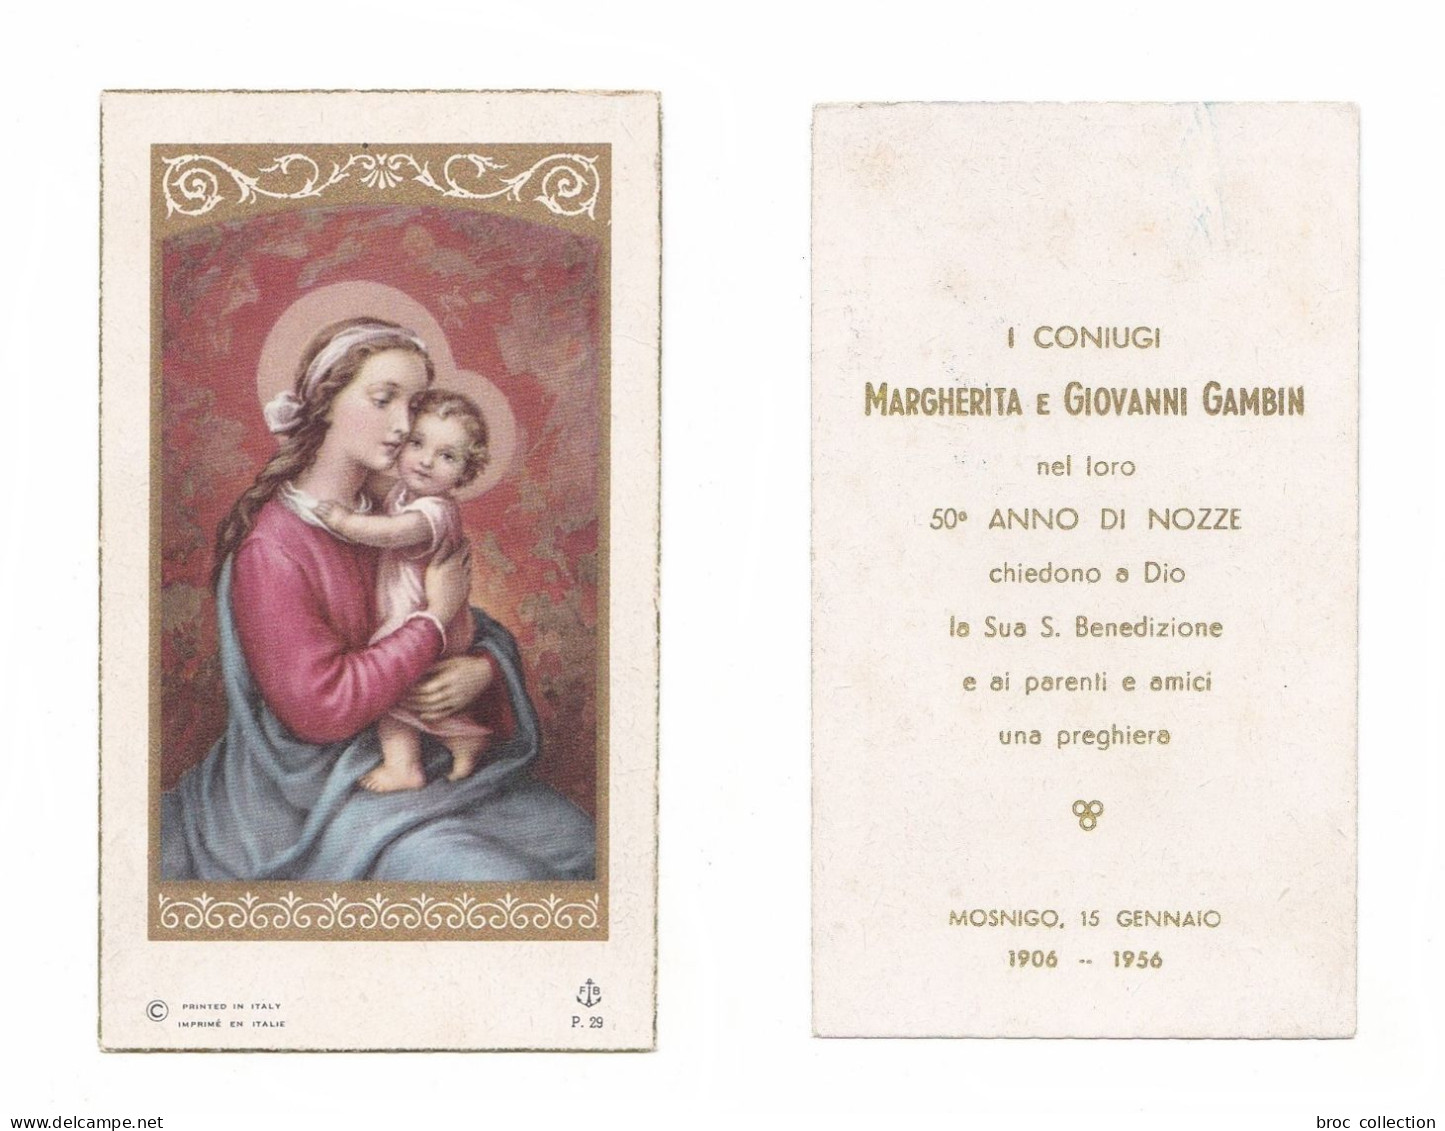 Mosnigo, 50° Anno Di Nozze Di Margherita E Giovanni Gambin, 1956, Vierge à L'Enfant, éd. F. B. P. 29 - Santini